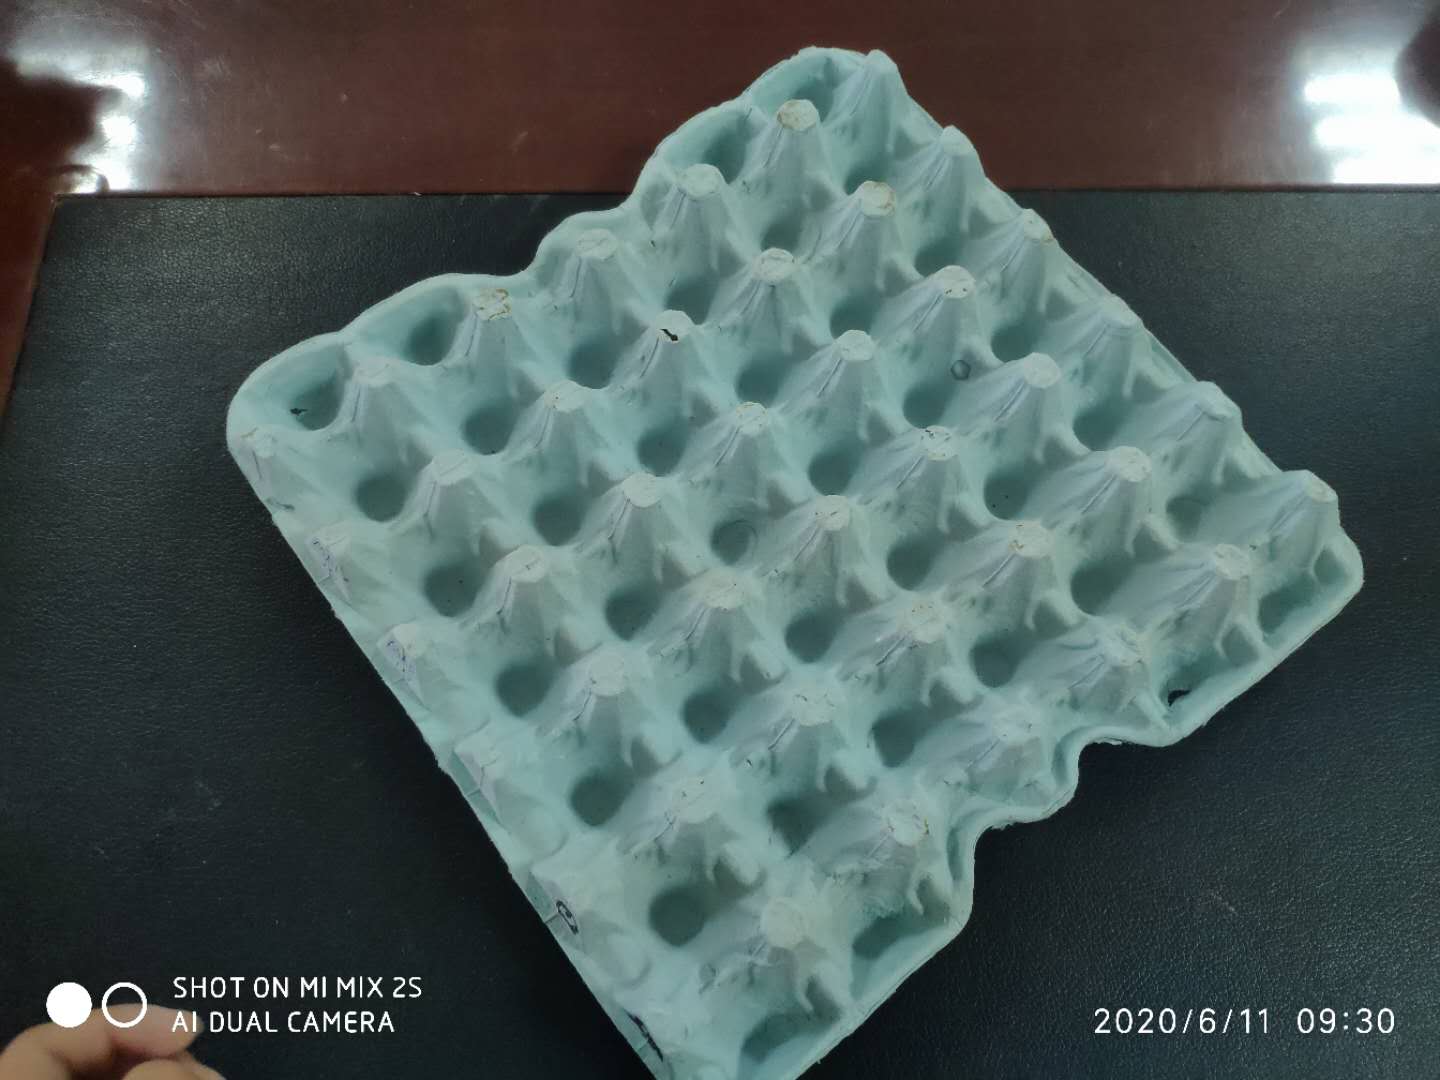 egg tray , egg tray molds , egg tray mould - Shenzhen Yaya Gifts